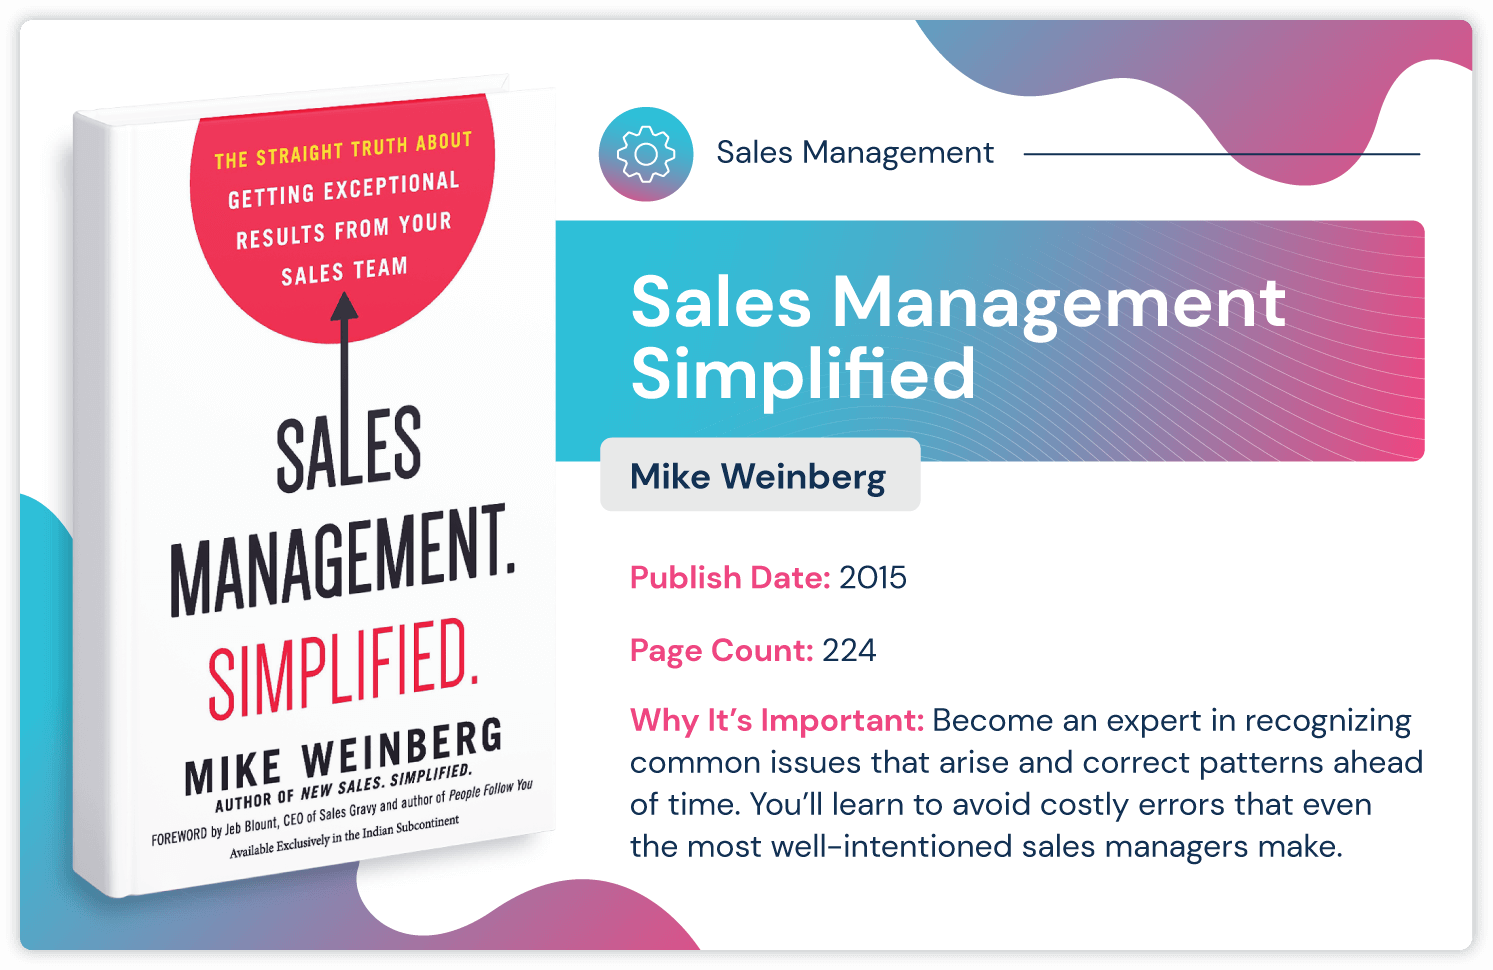 Książka o zarządzaniu sprzedażą zatytułowana "Zarządzanie sprzedażą uproszczone przez Mike'a Weinberga o unikaniu kosztownych błędów w zarządzaniu sprzedażą. Wydana w 2015 roku i ma 224 strony